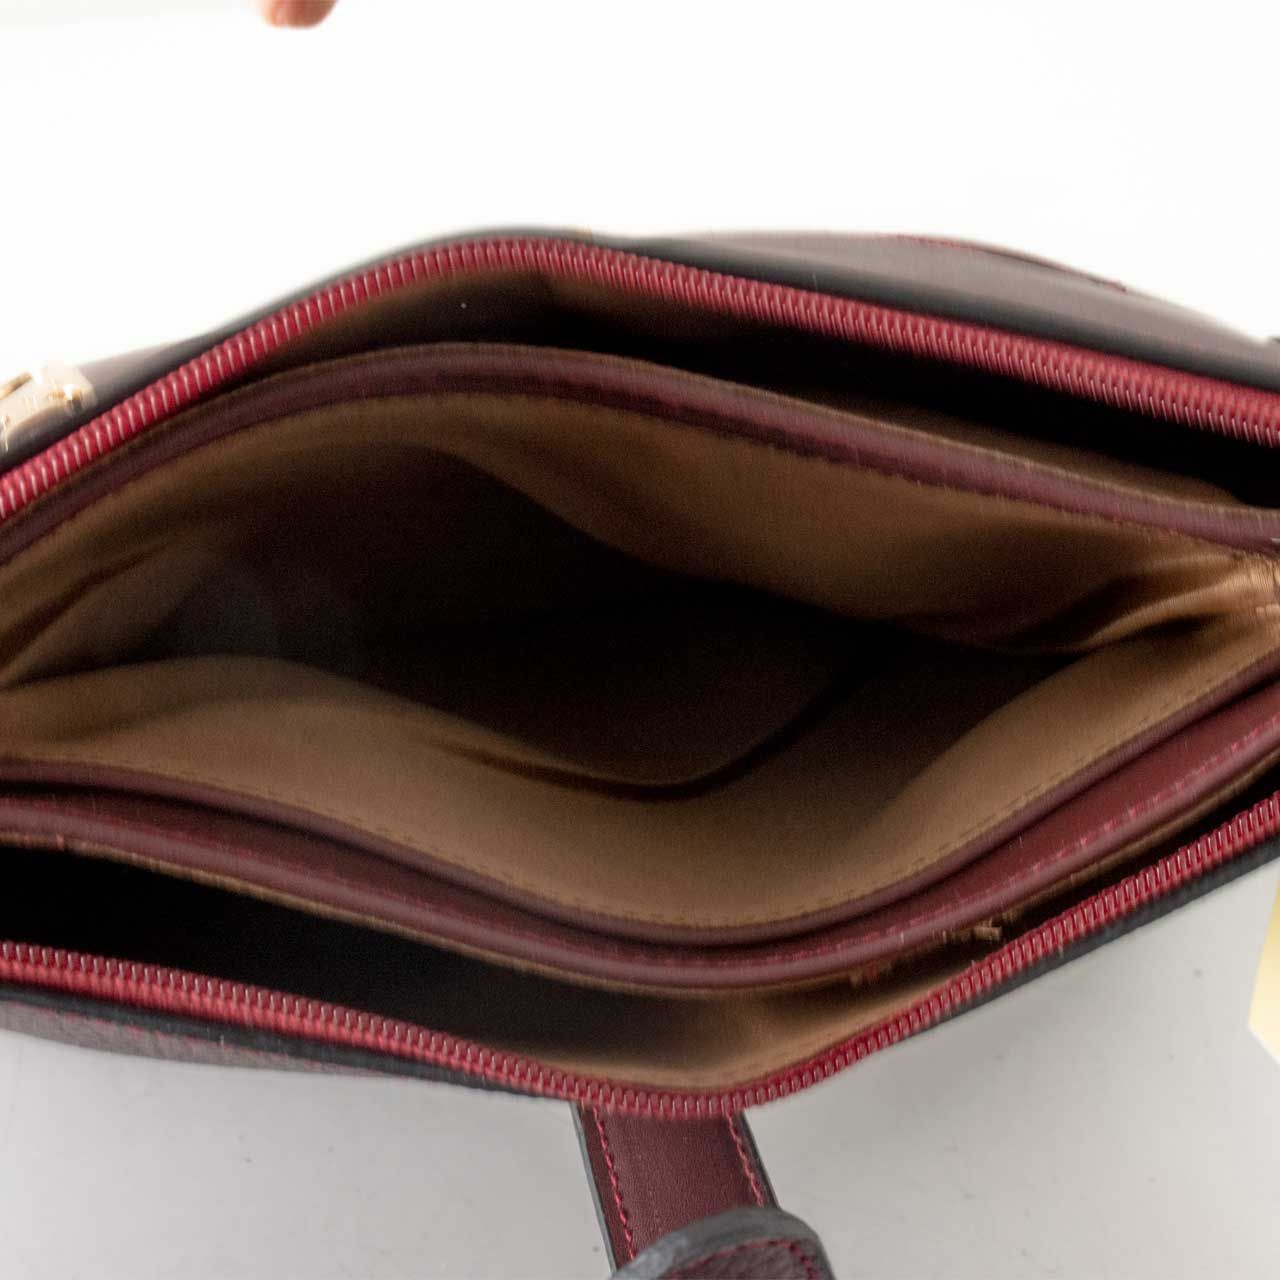 کیف دوشی زنانه پارینه چرم مدل plv222-12 -  - 8